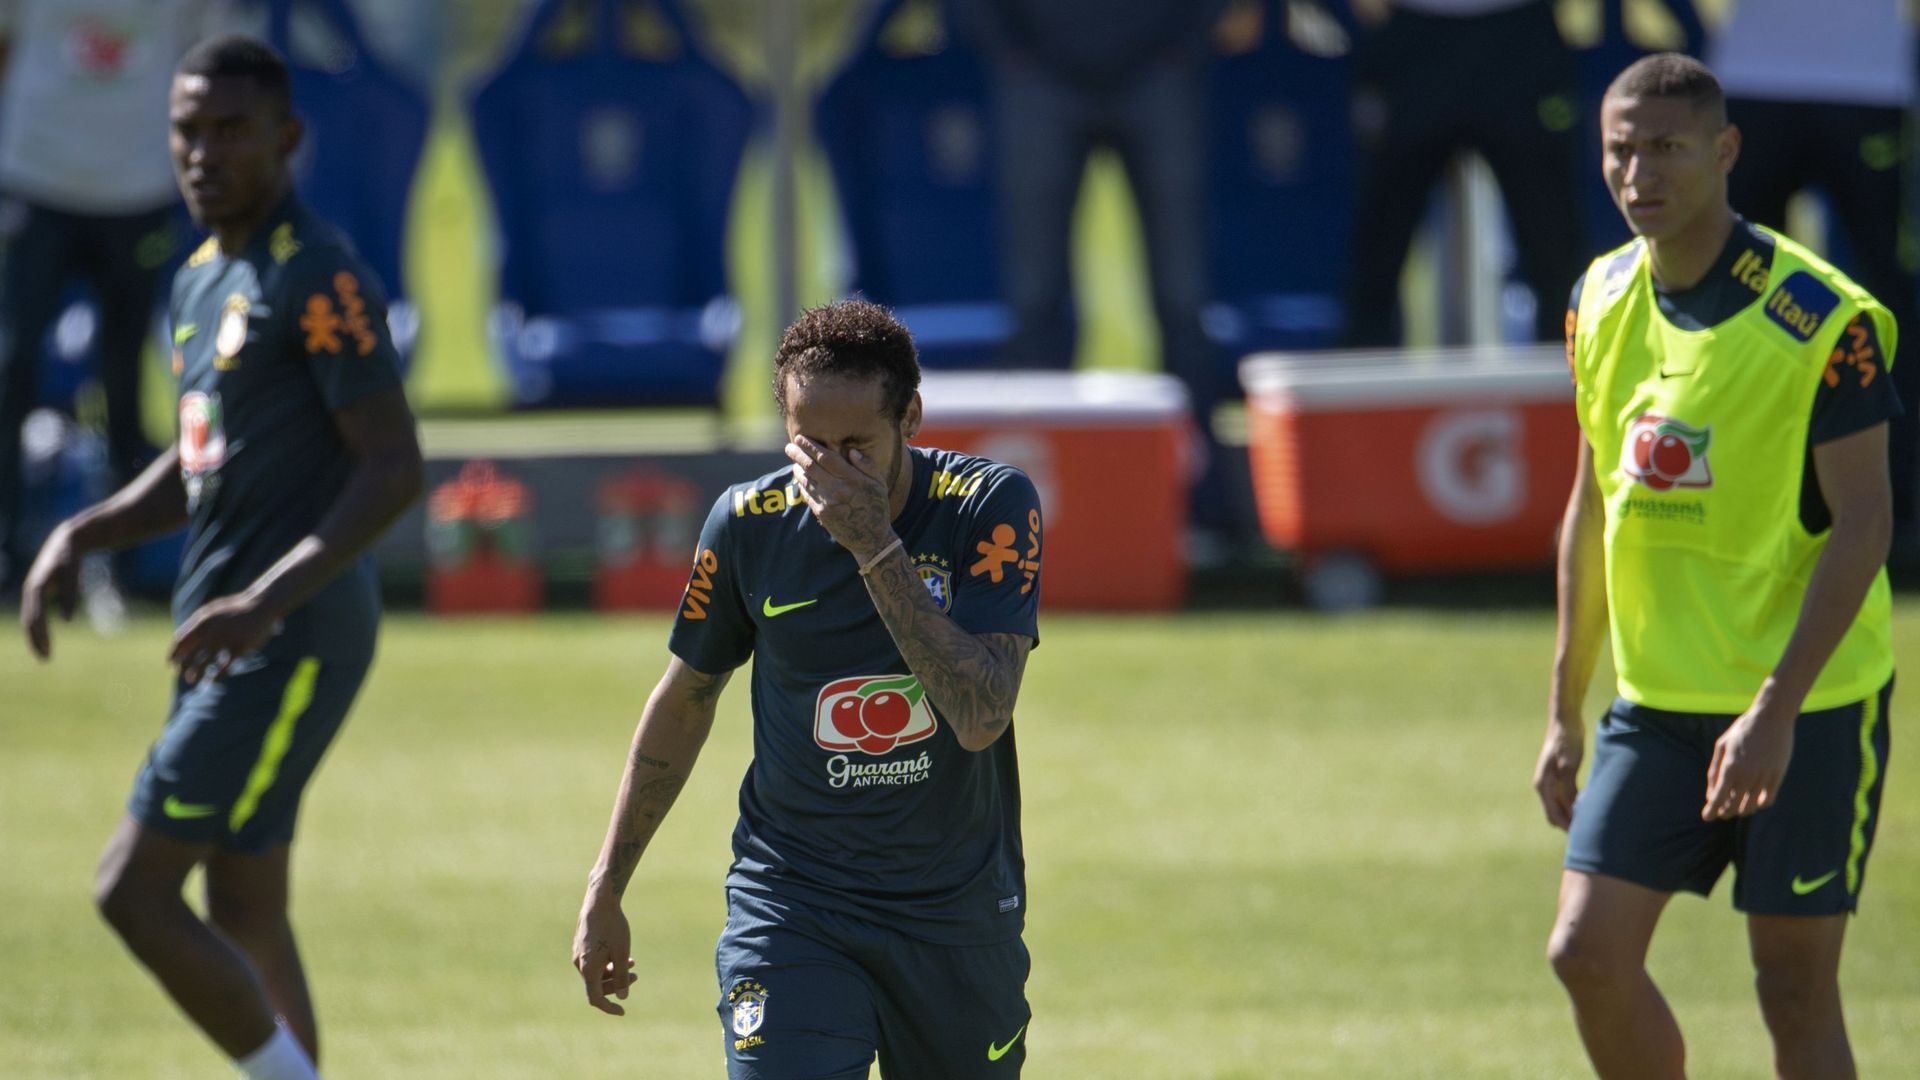 Douleur au genou inquiétante pour Neymar en vue de la Copa America ...